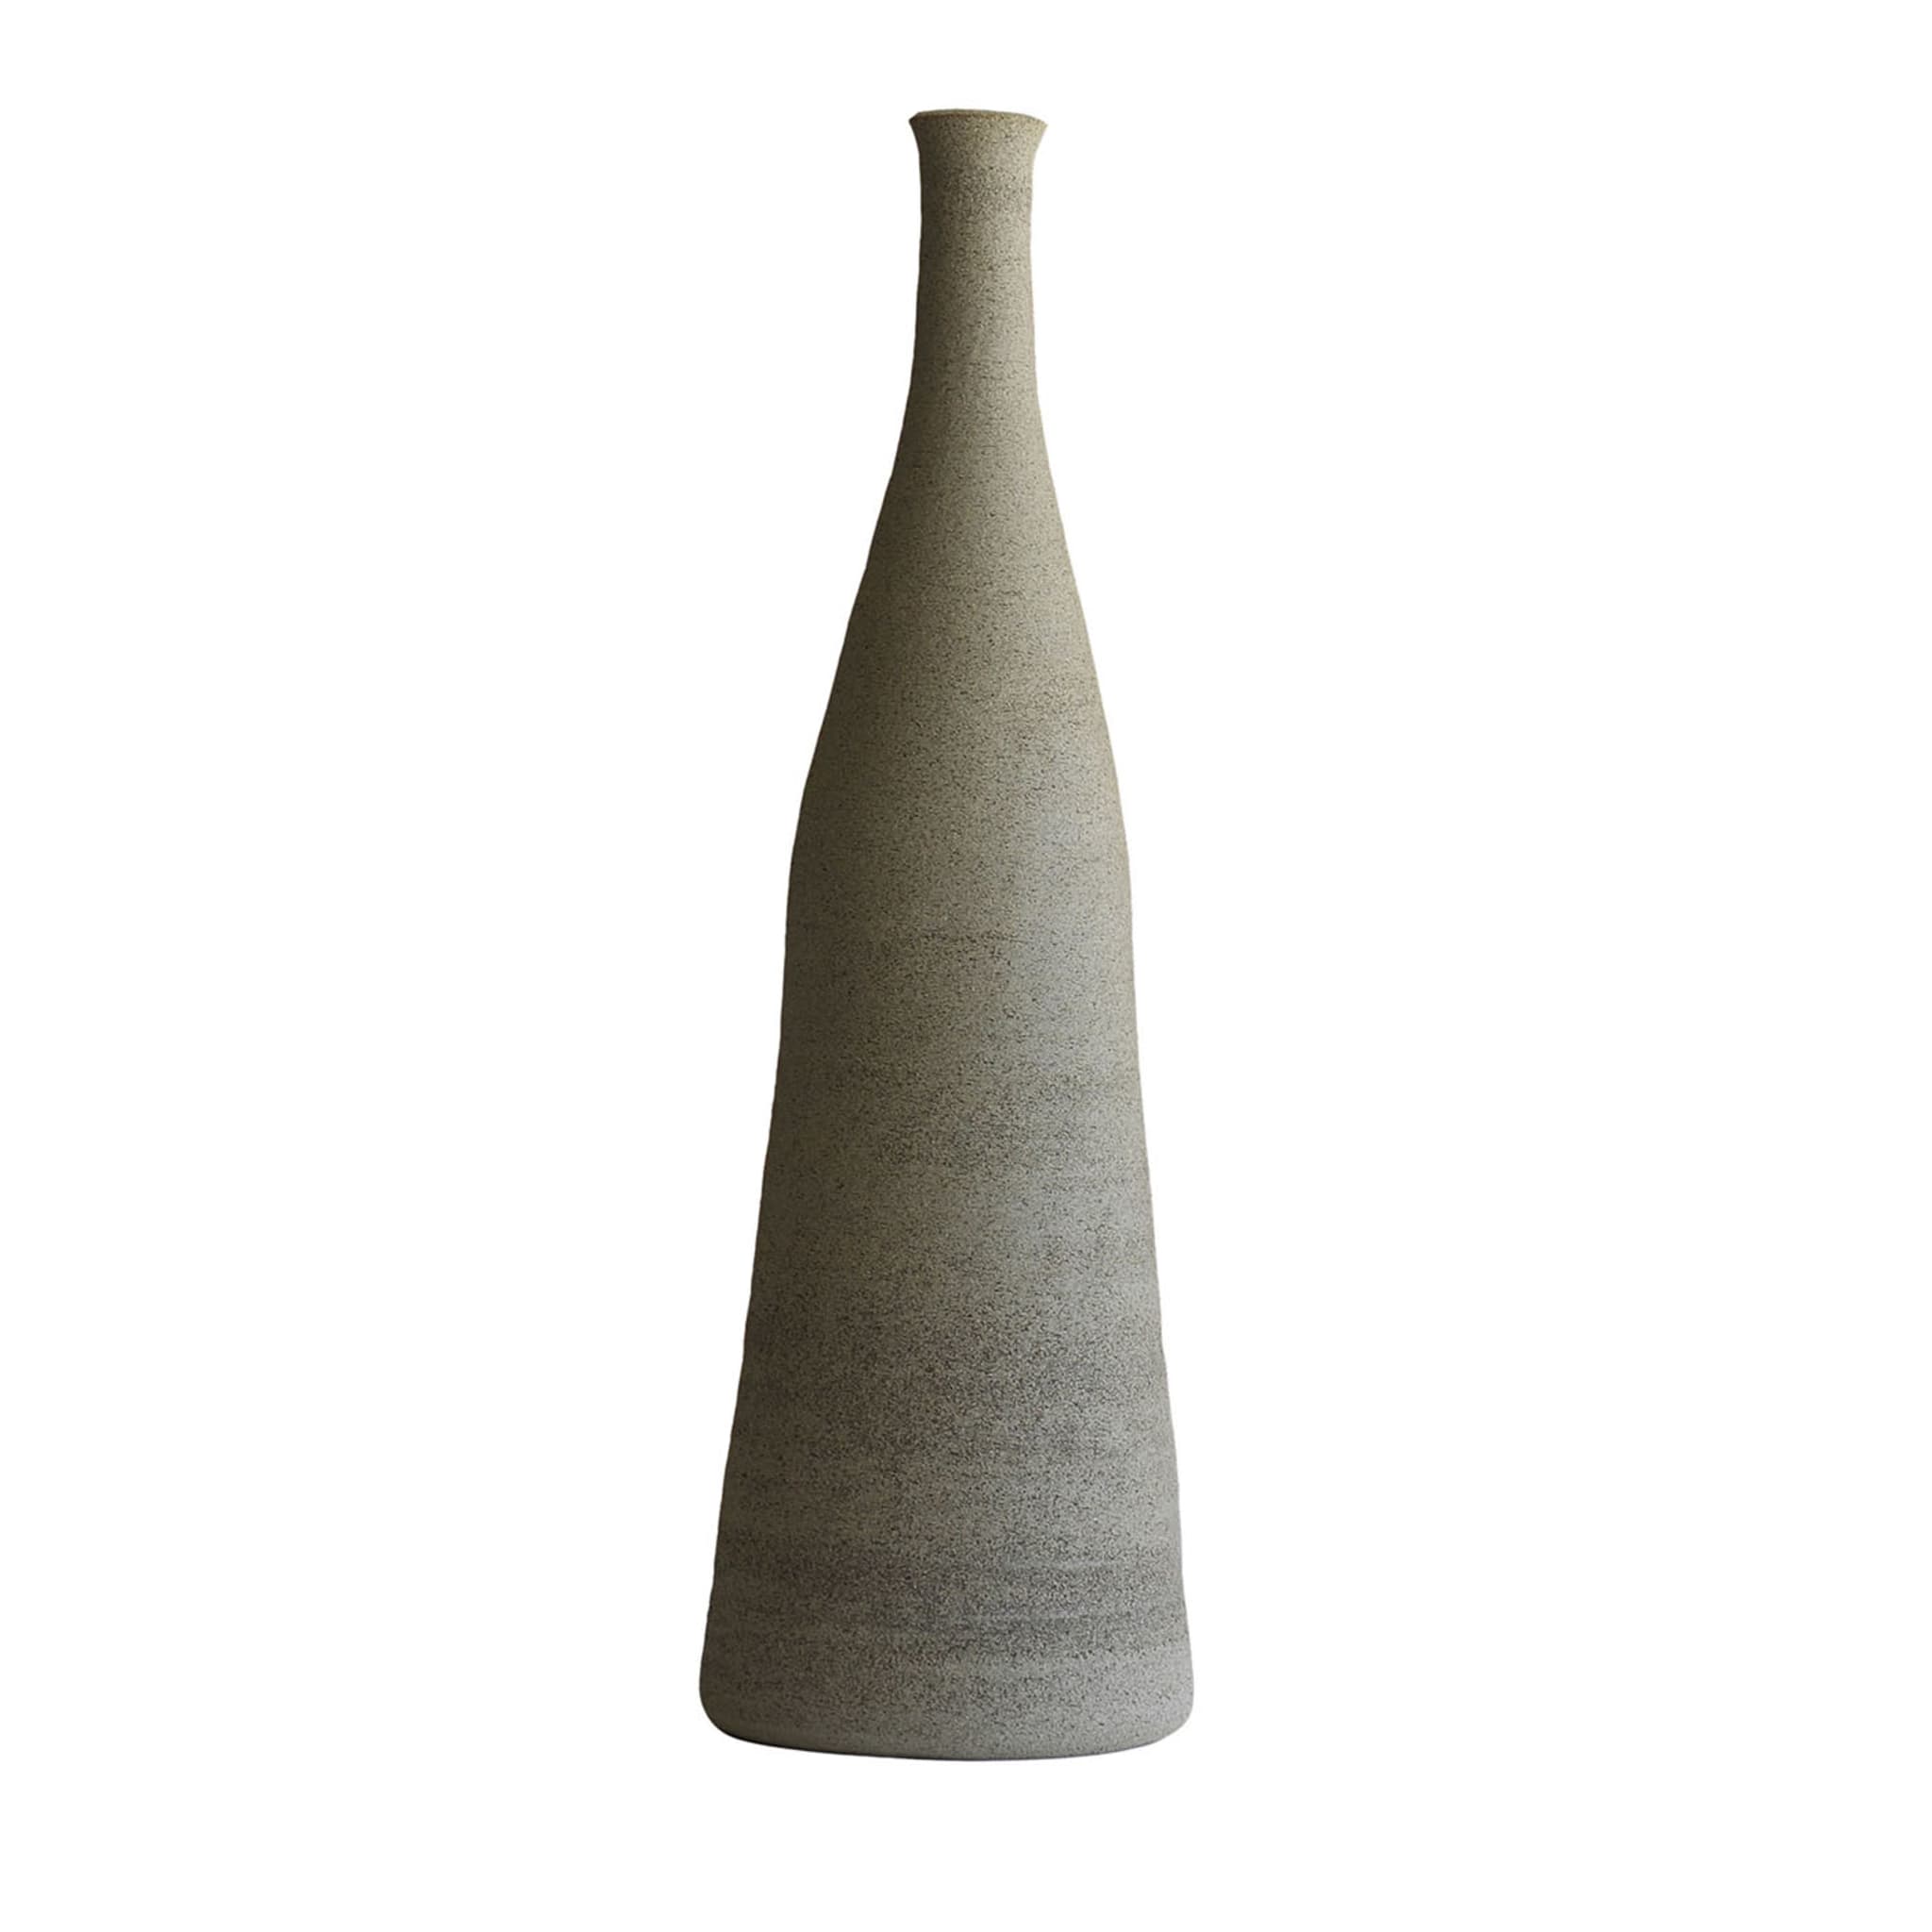 Konisch zulaufende dekorative Vase Sand - Hauptansicht